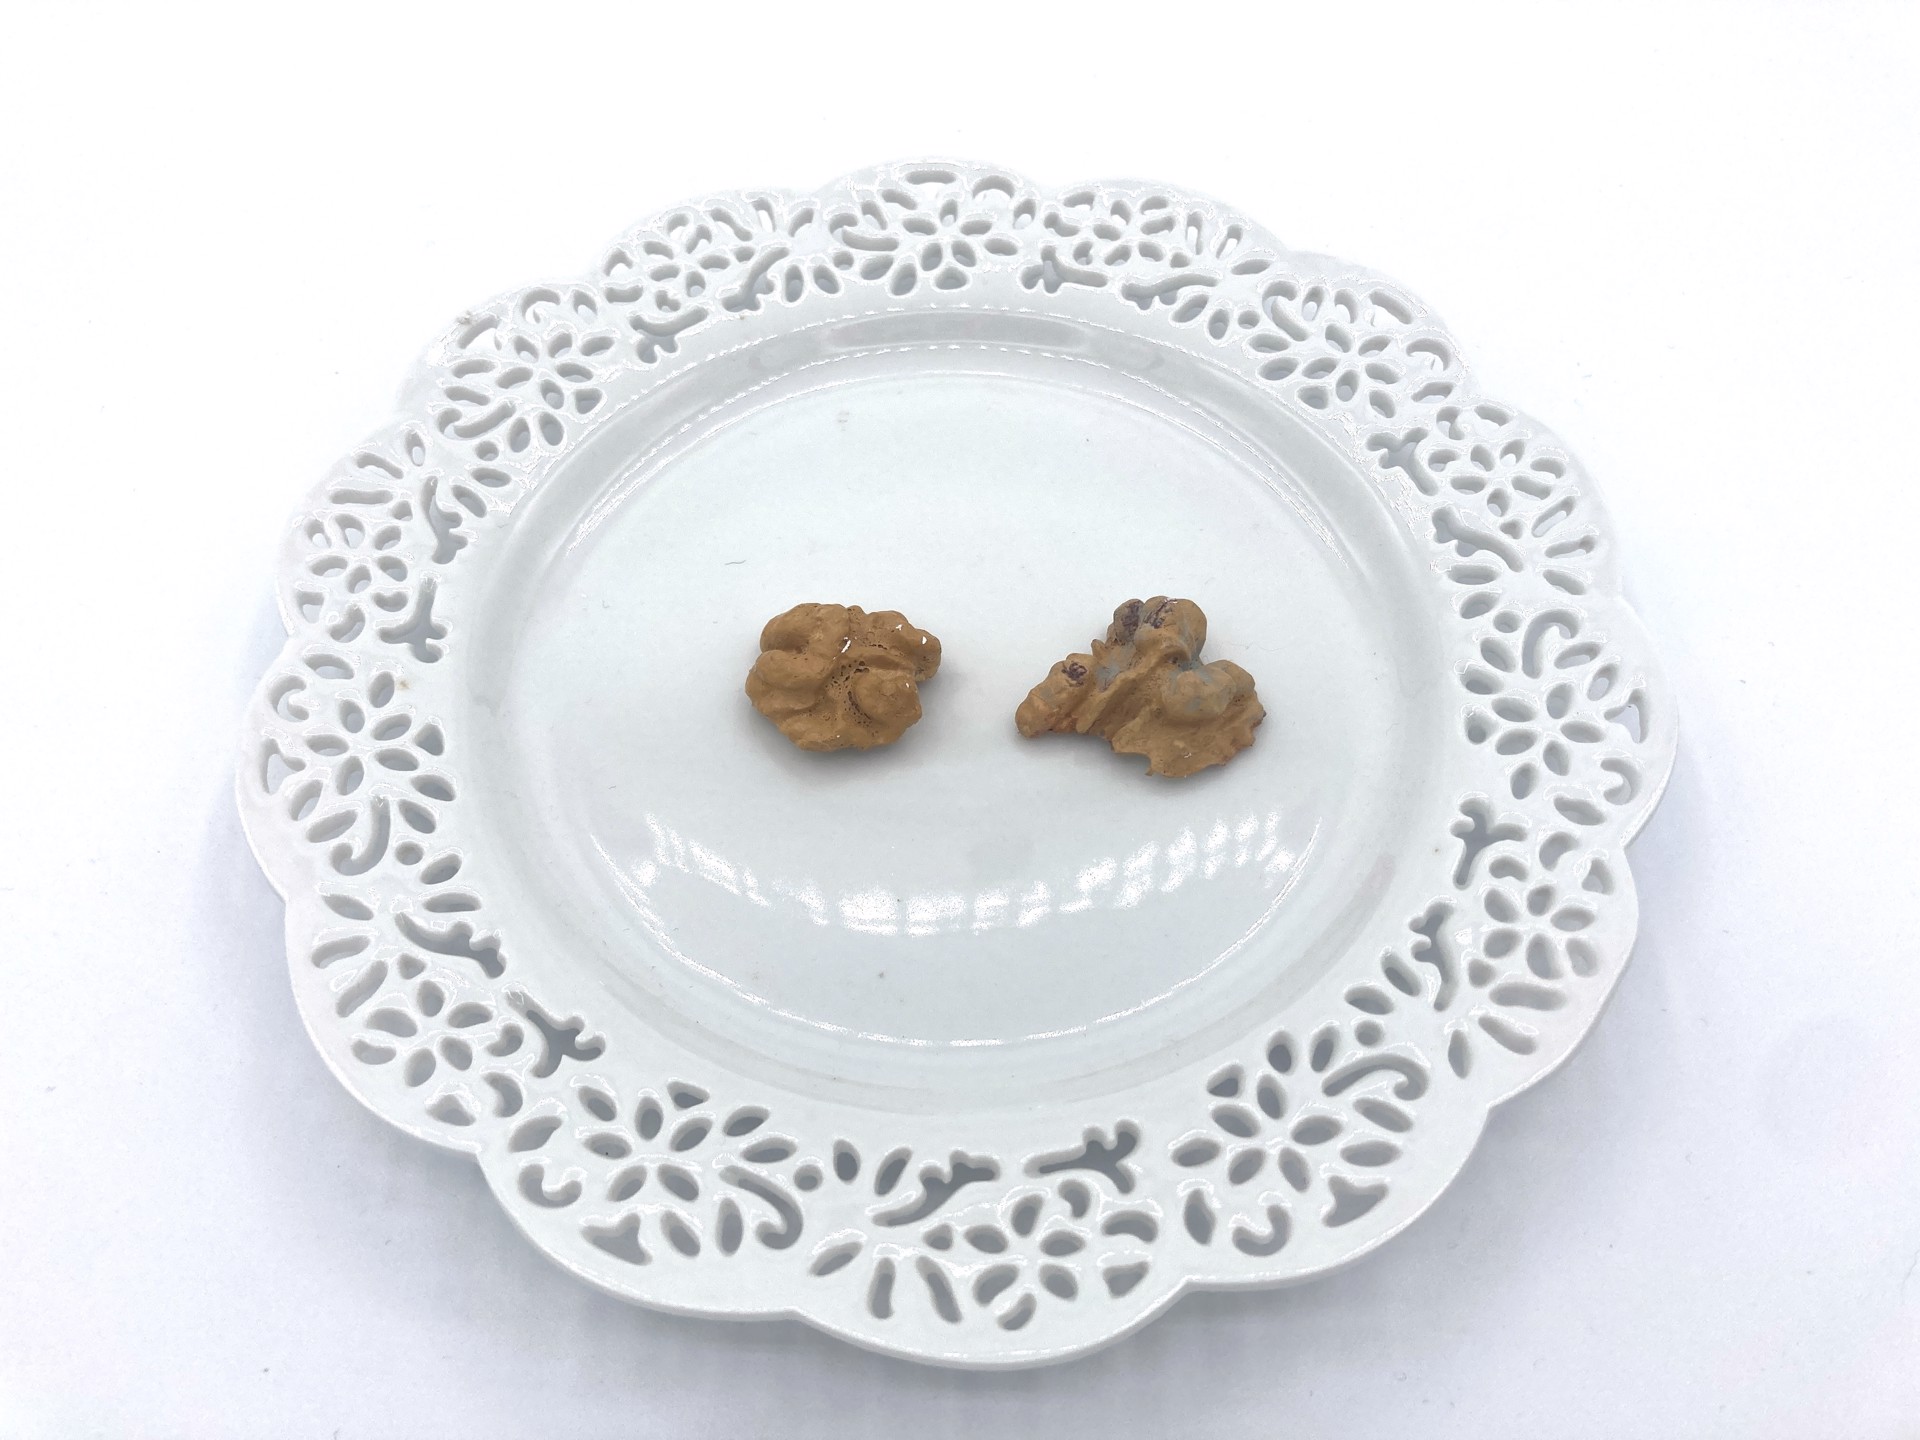 Walnuts (individual) by Henri Gadbois Ceramics